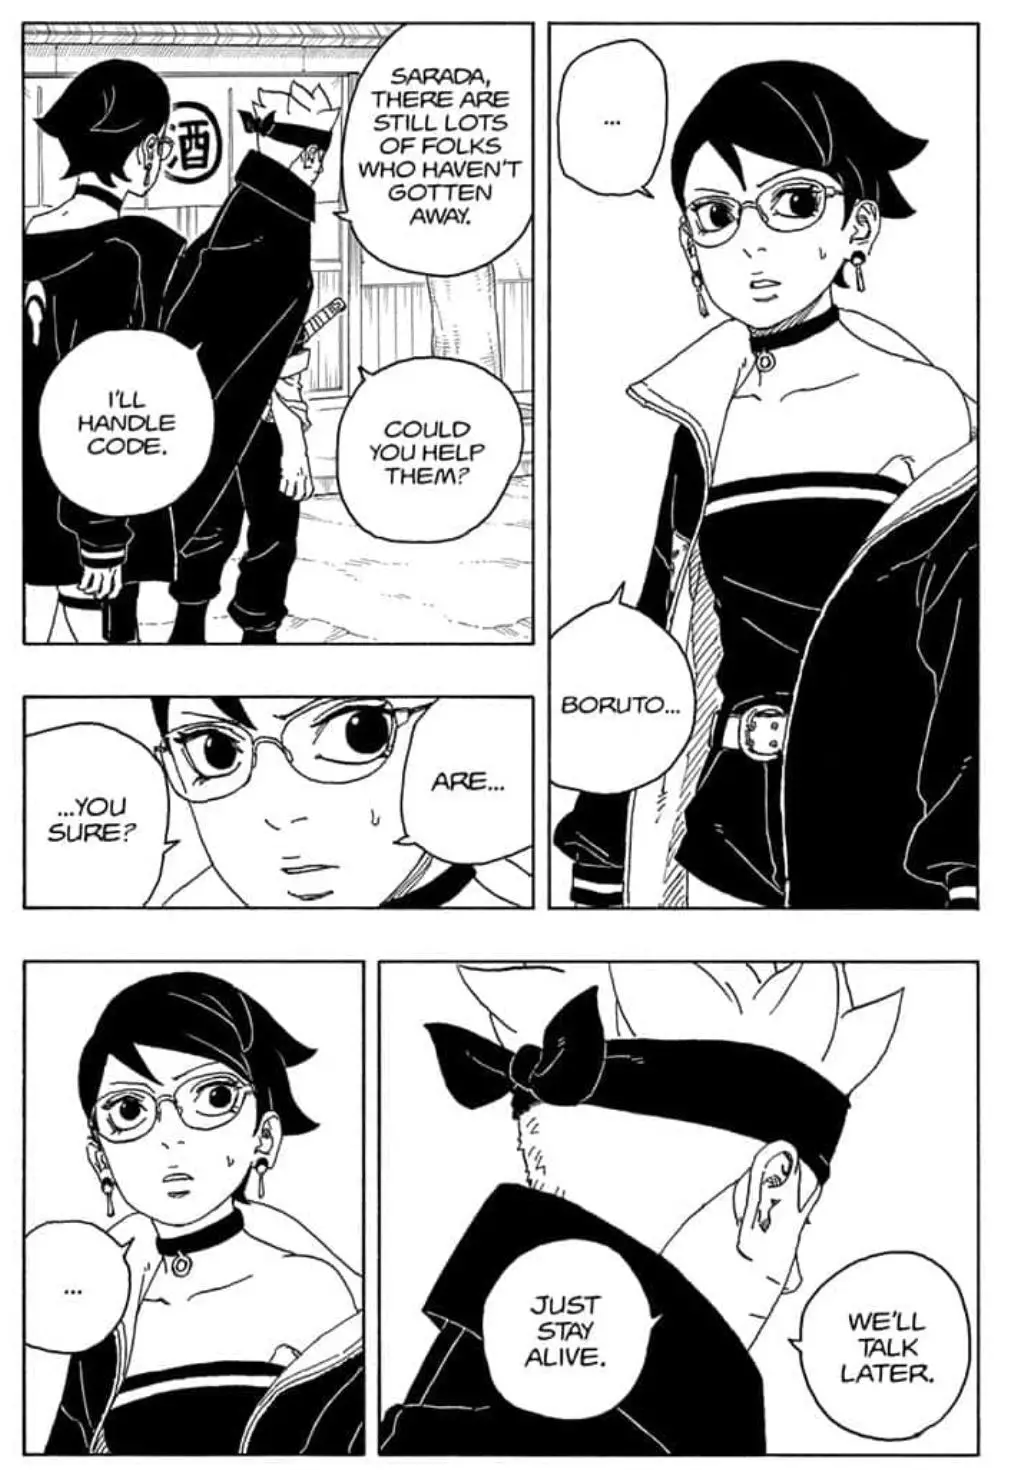 Boruto: Naruto Next Generations - 82 page 6-9c12d44a